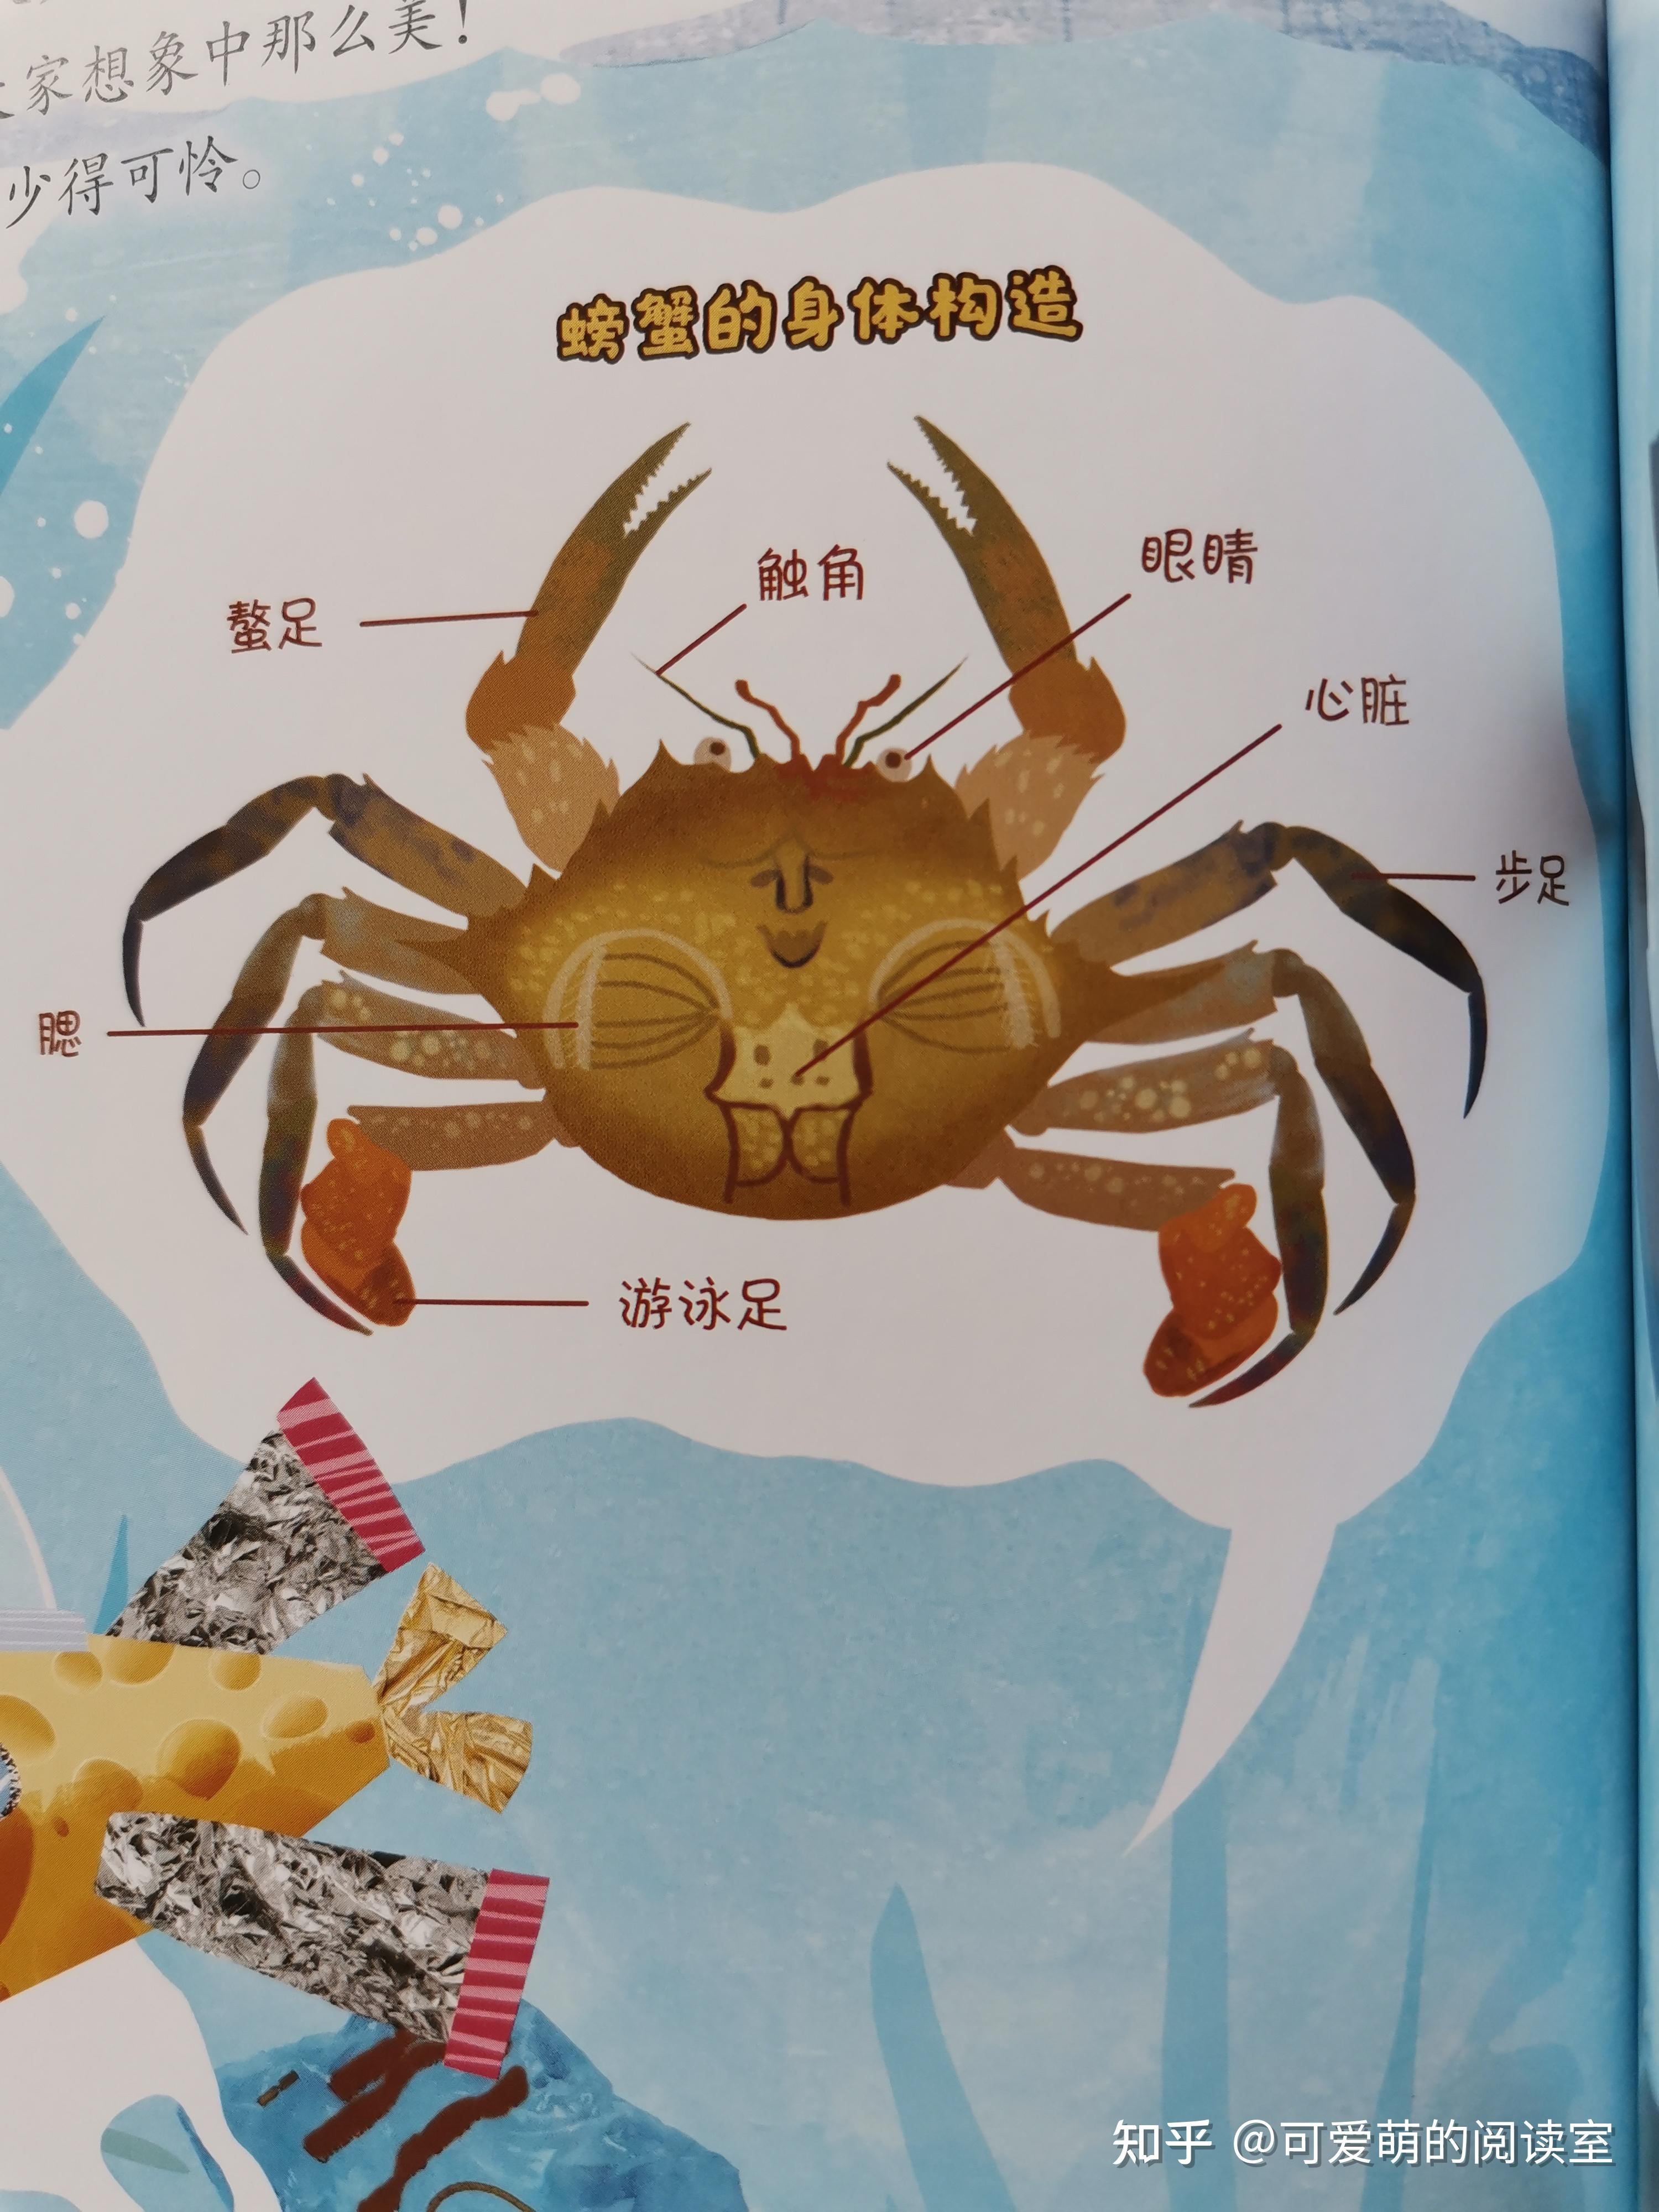 螃蟹的性别,是从他们的肚皮上的图案来分辨的:肚皮是椭圆形的是螃蟹